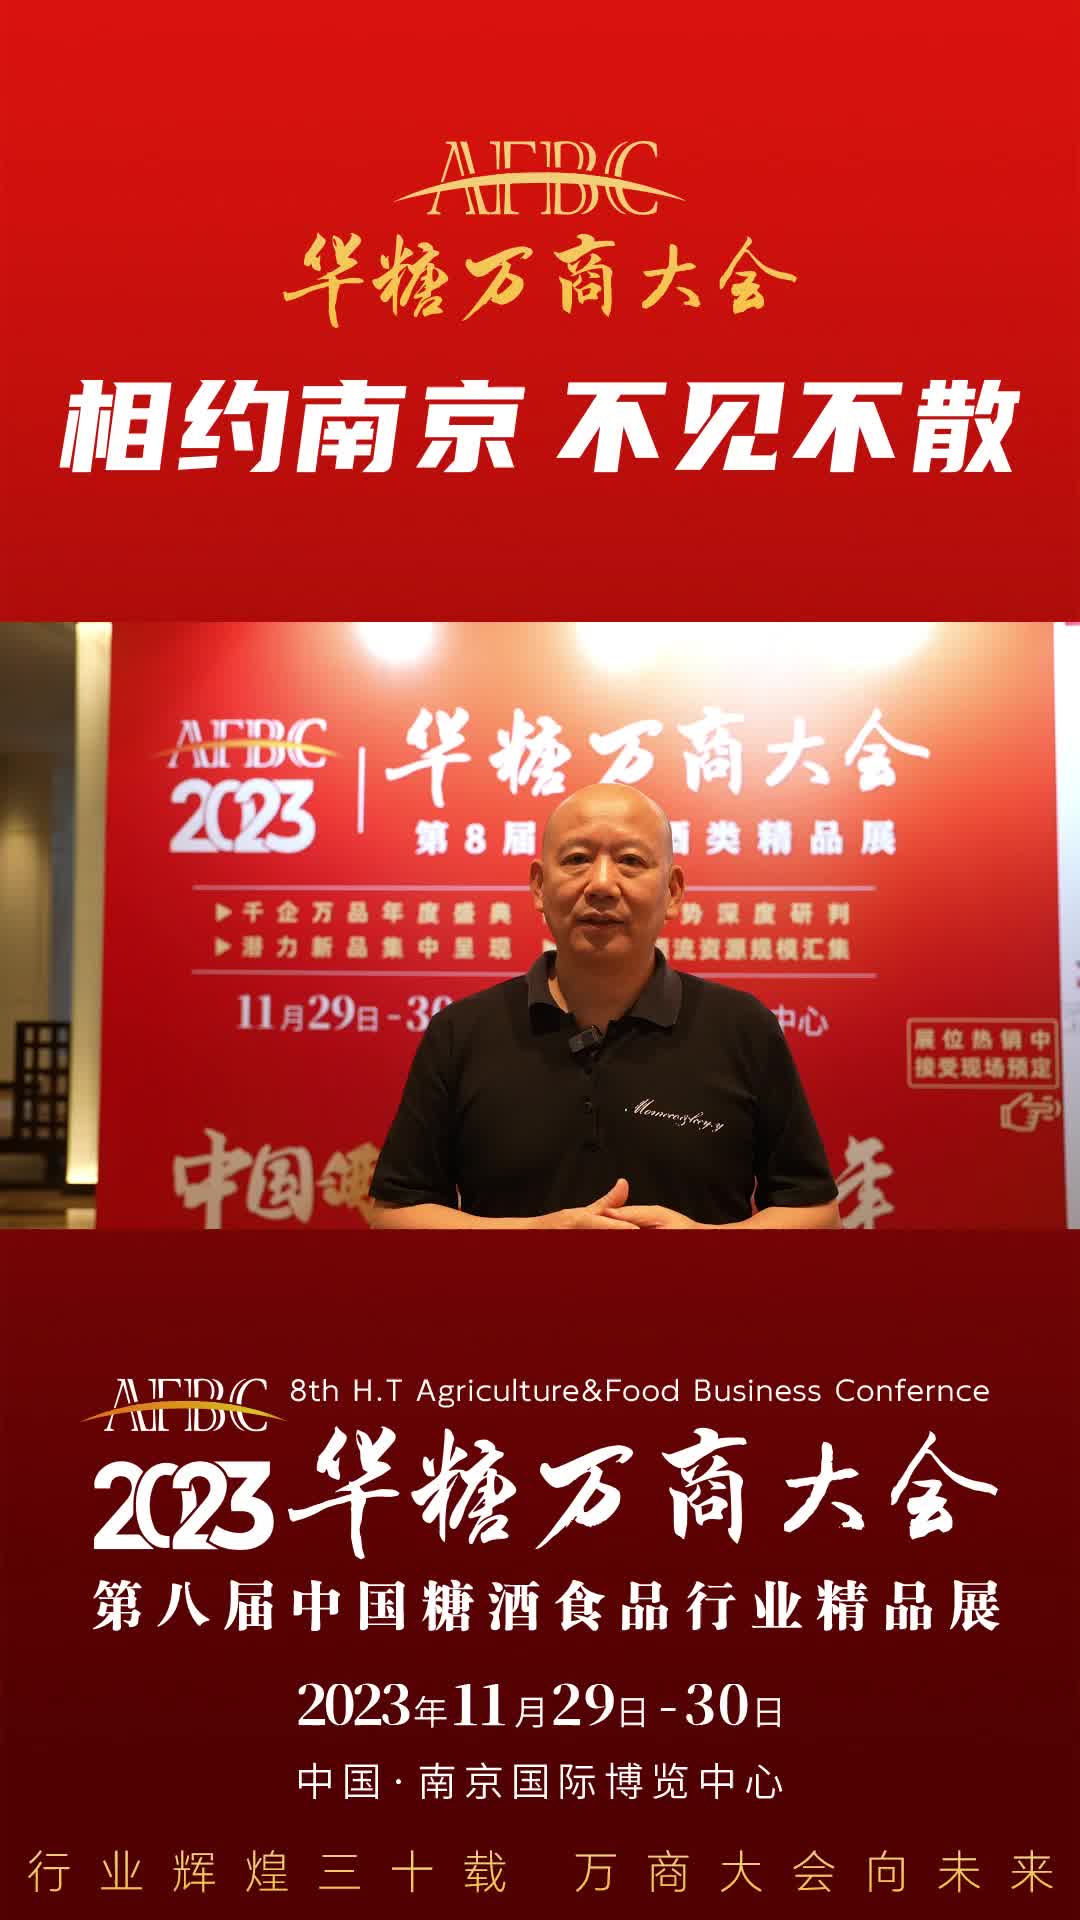 11月29日-30日，中国·南京，零点有数董事长、飞马旅创始人袁岳与您相约万商大会！